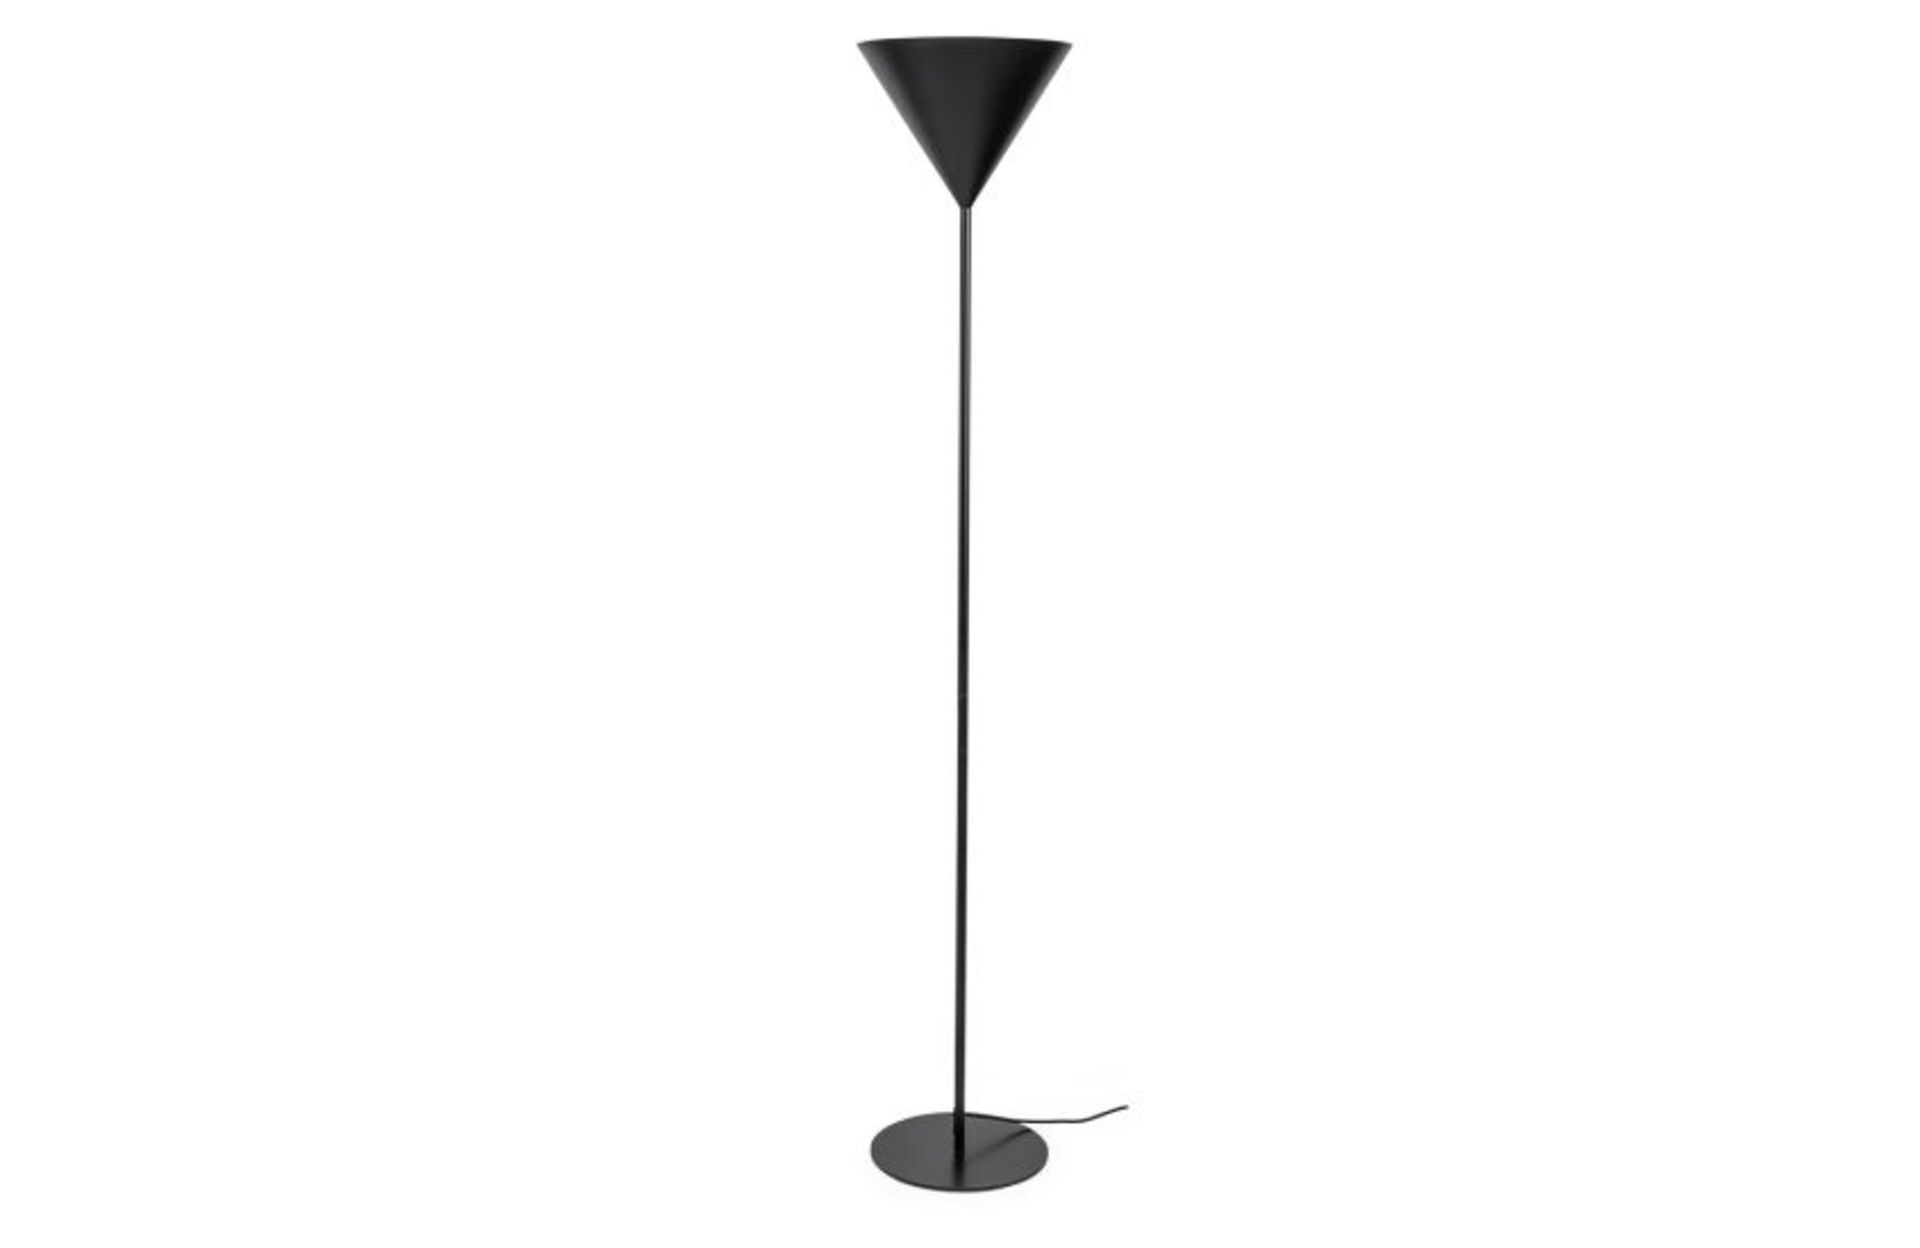 Heals Benjamin Uplighter Floor Lamp Black RRP 269.00 Sleek, slatted wooden accents lend this AV unit